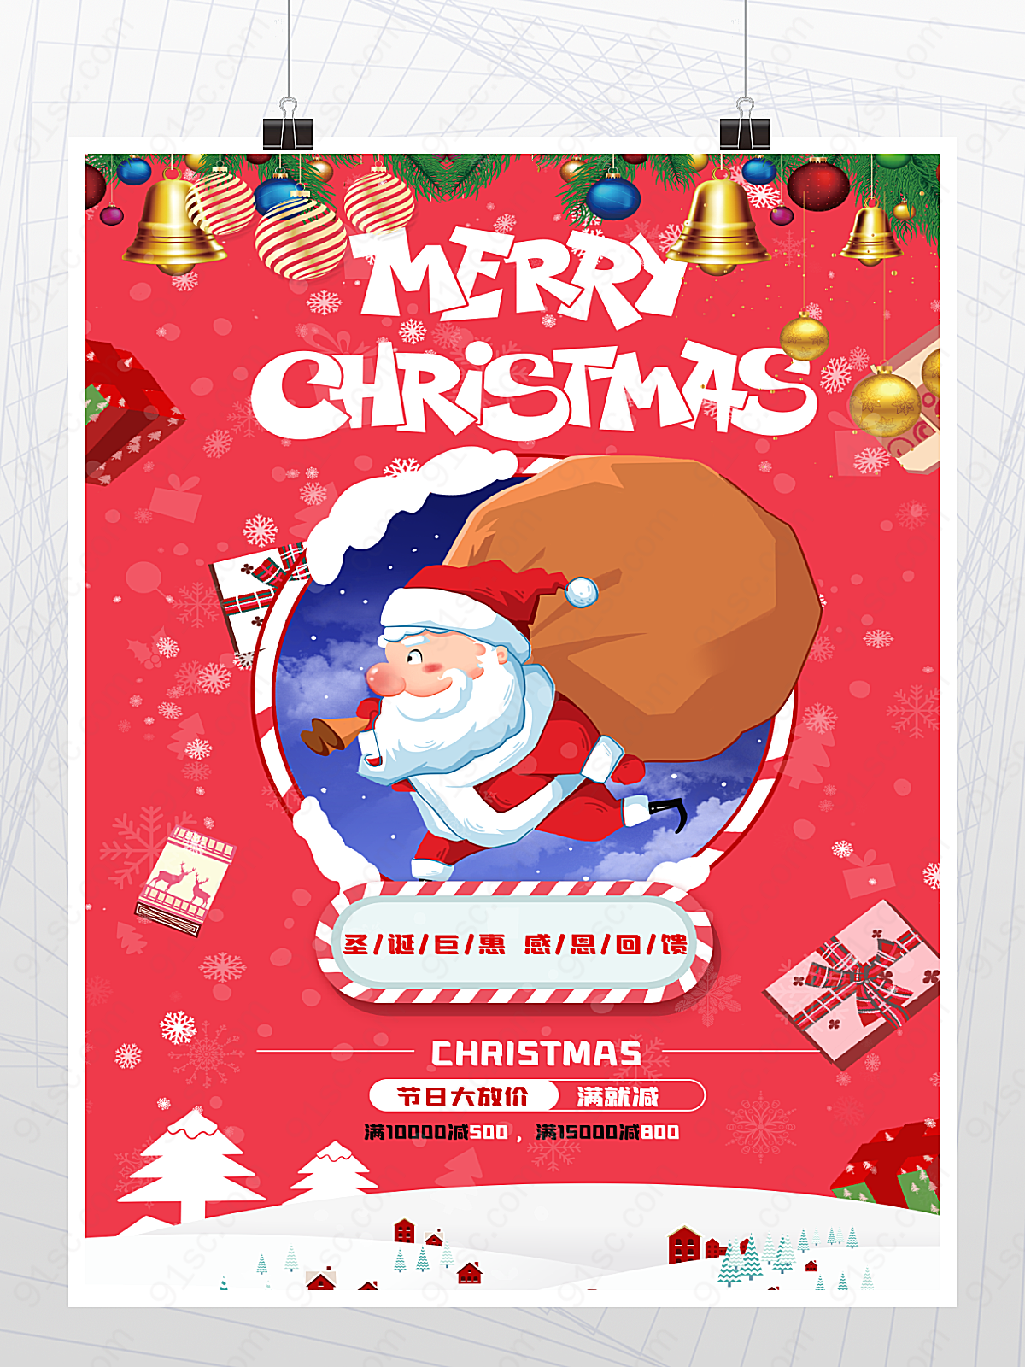 圣诞节大放价感恩回馈节日钜惠海报